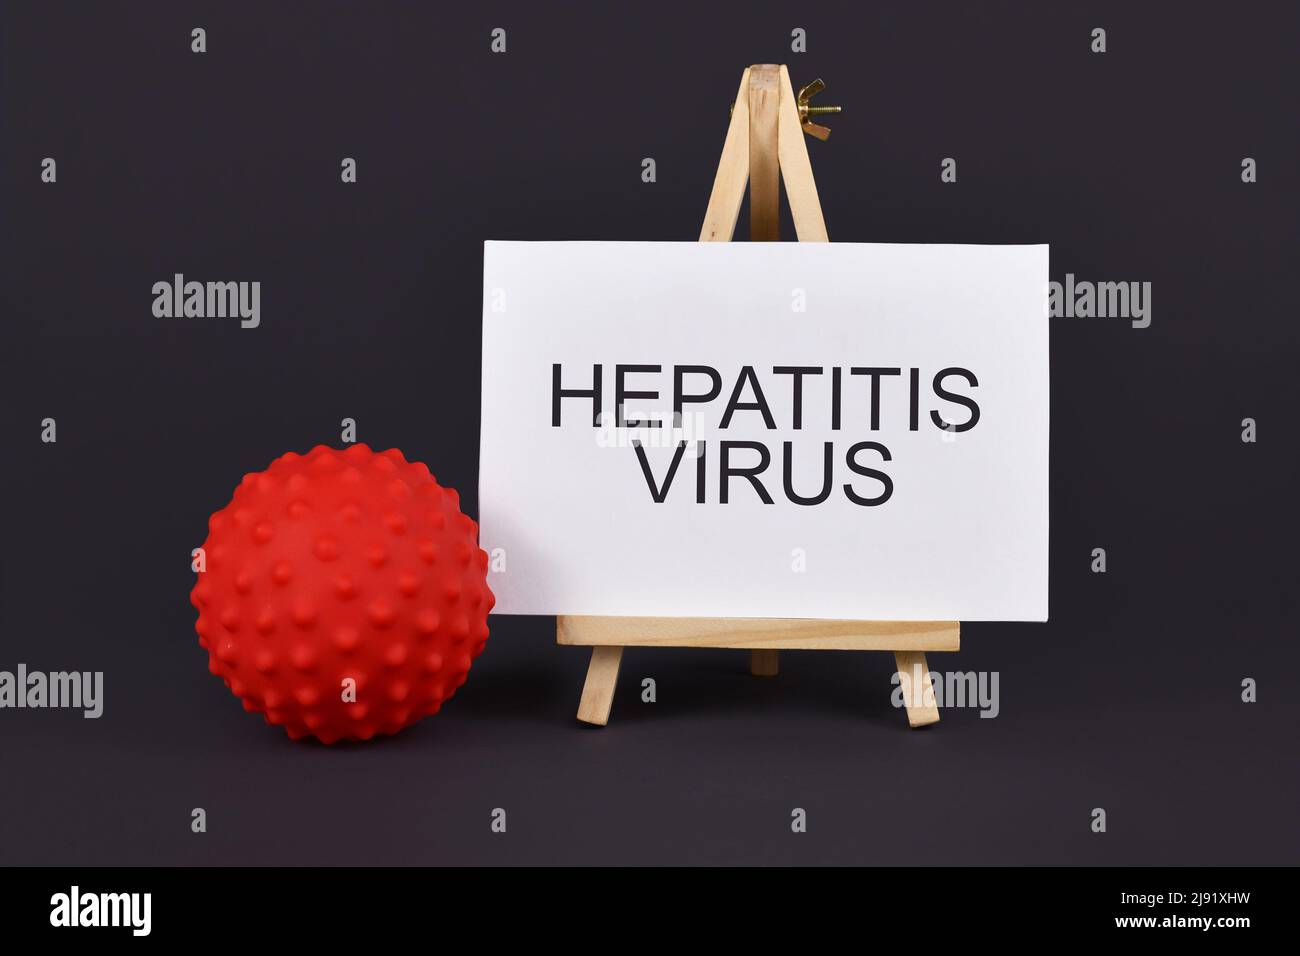 Concetto di epatite virale con modello di virus circolare e testo Foto Stock